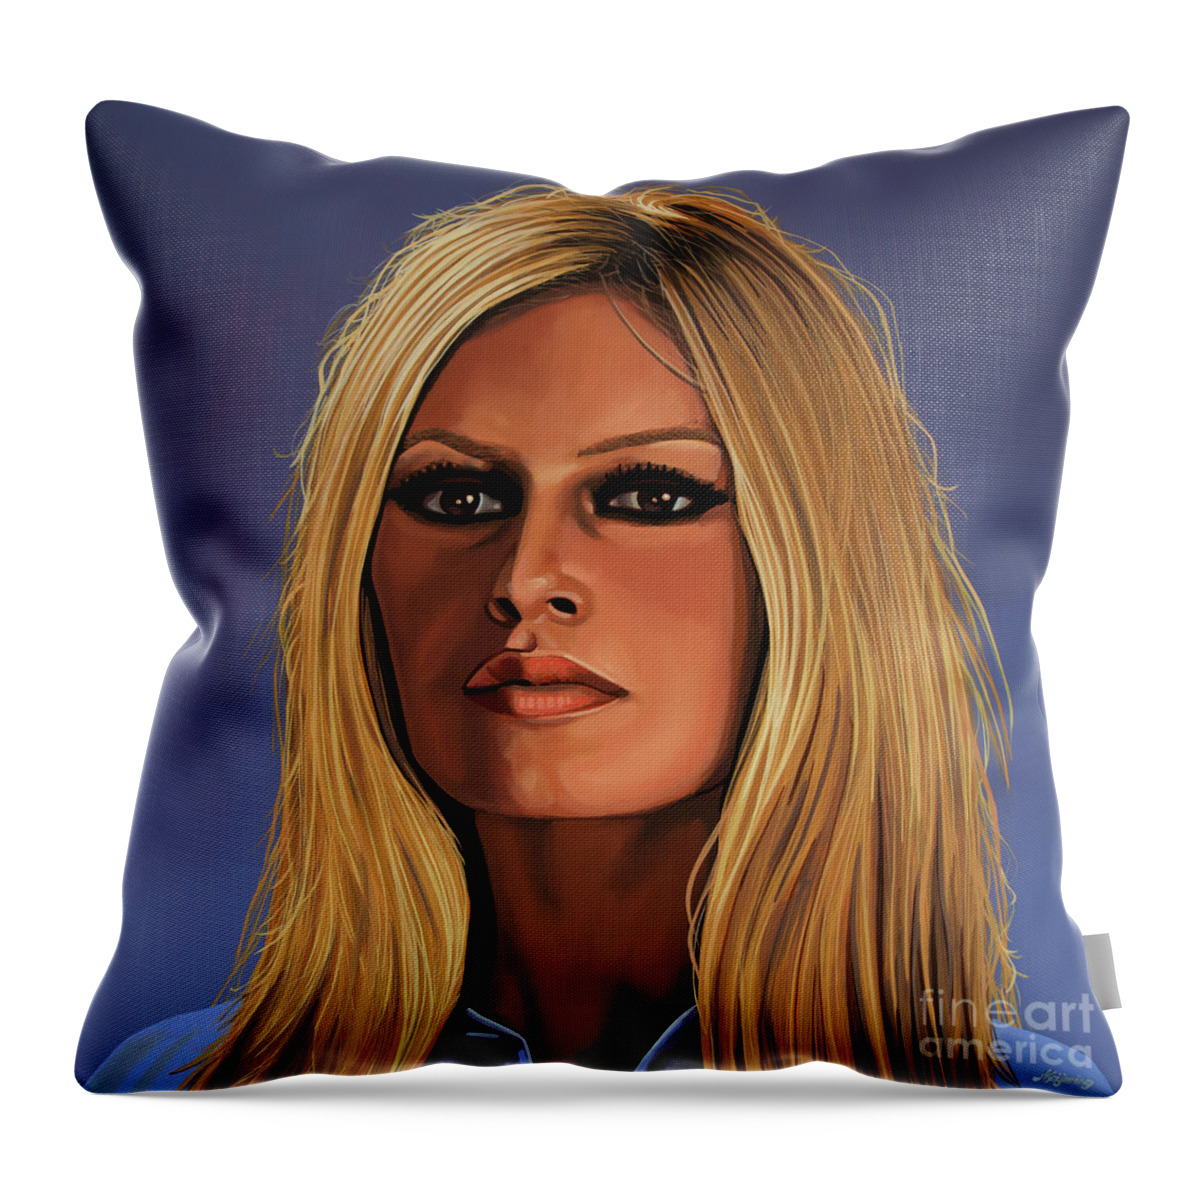 Brigitte Bardot Throw Pillow featuring the painting Brigitte Bardot Painting 3 by Paul Meijering